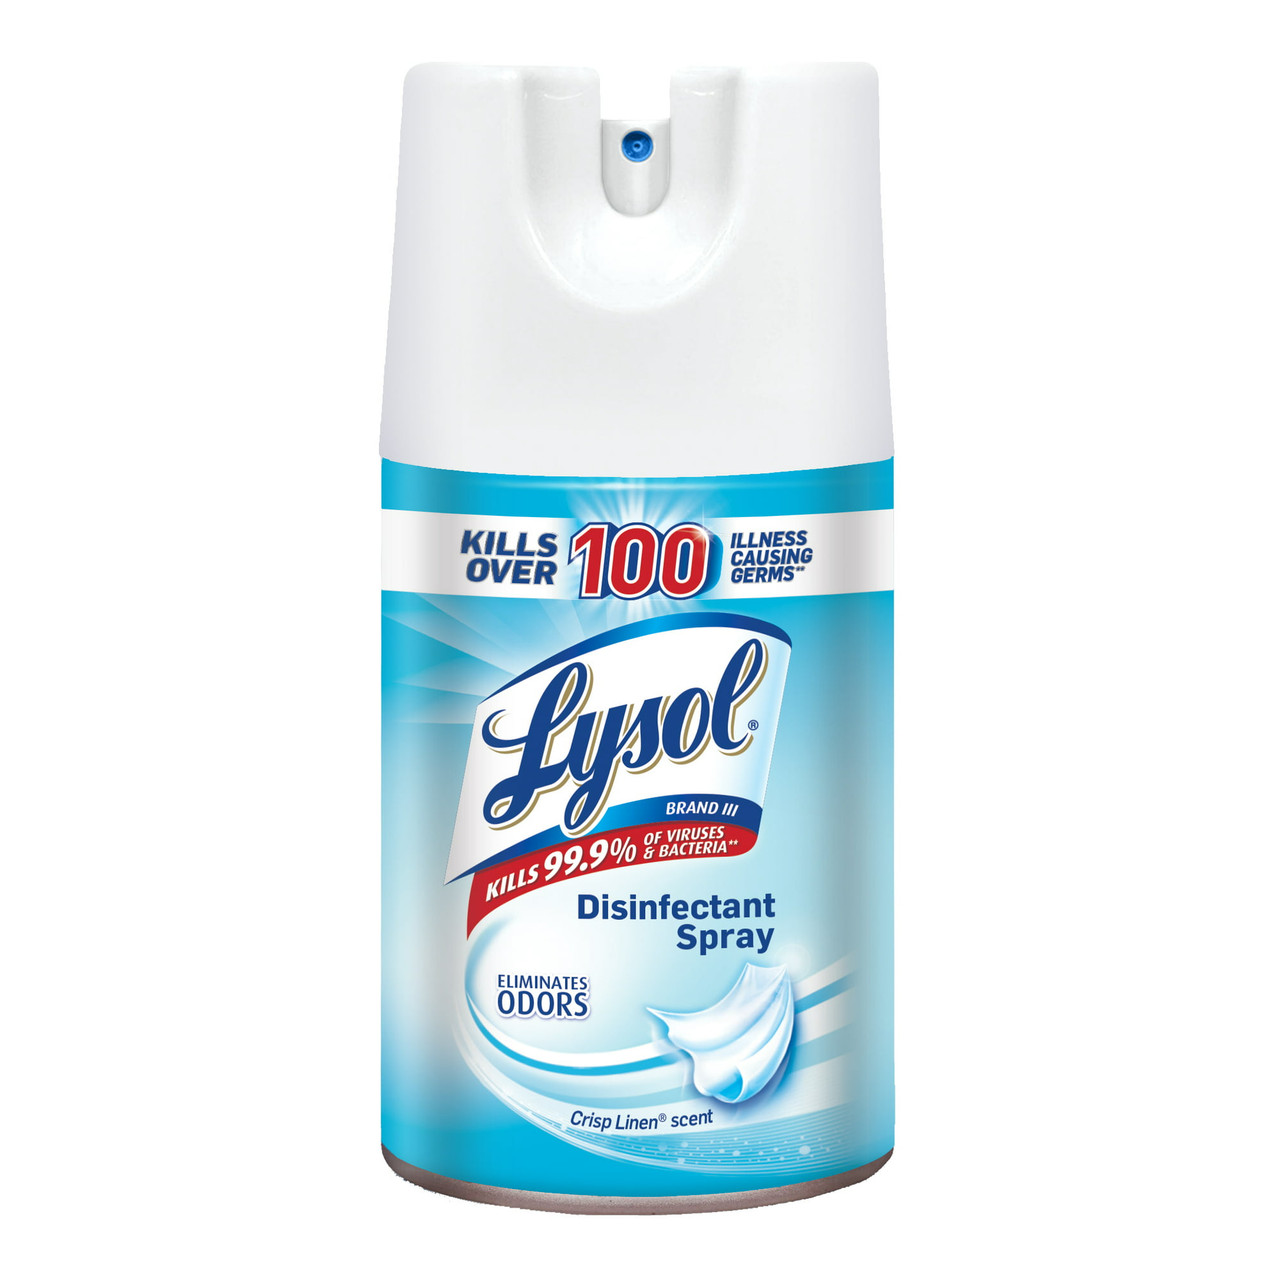 Lysol Crisp Linen Scent, Disinfectant Spray, 6 Oz